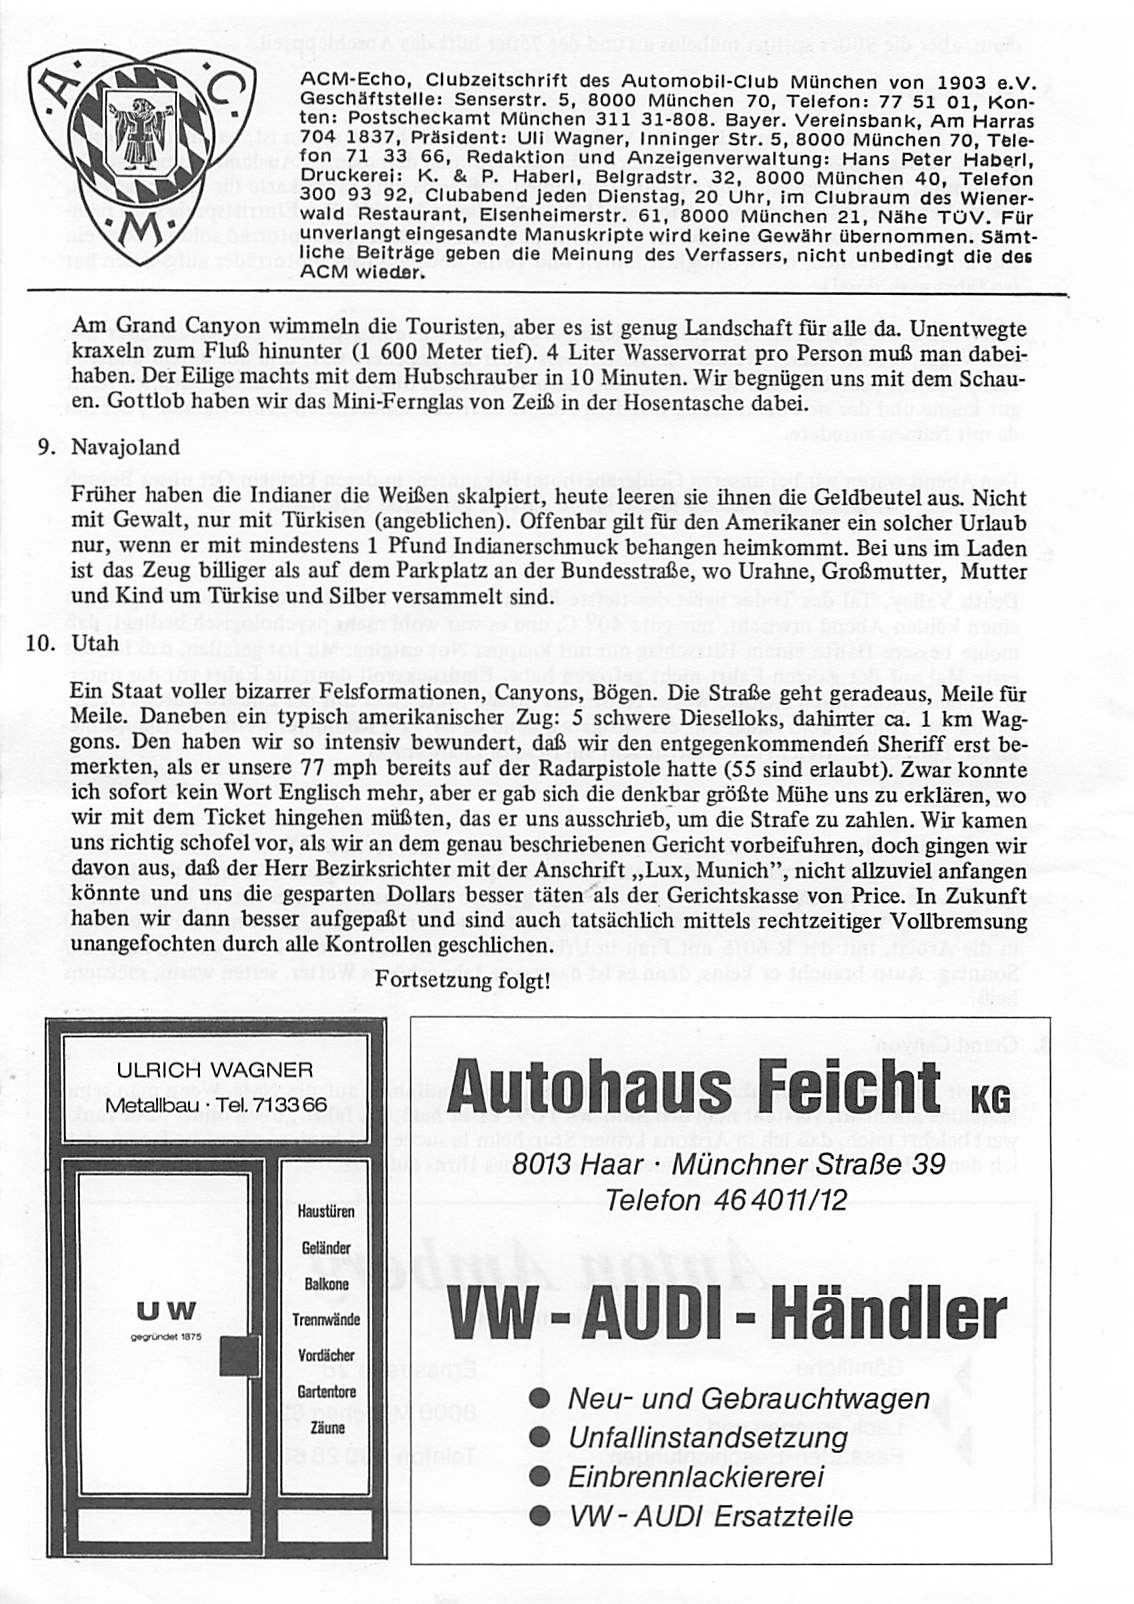 ACM-Echo, Clubzeitschrift des Automobil-Club München von 1903 e.v. Geschäftstelle: Senserstr. 5, 8000 München 70, Telefon: 77 51 Ol, Kon ten: Postscheckamt München 311 31-808. Bayer.